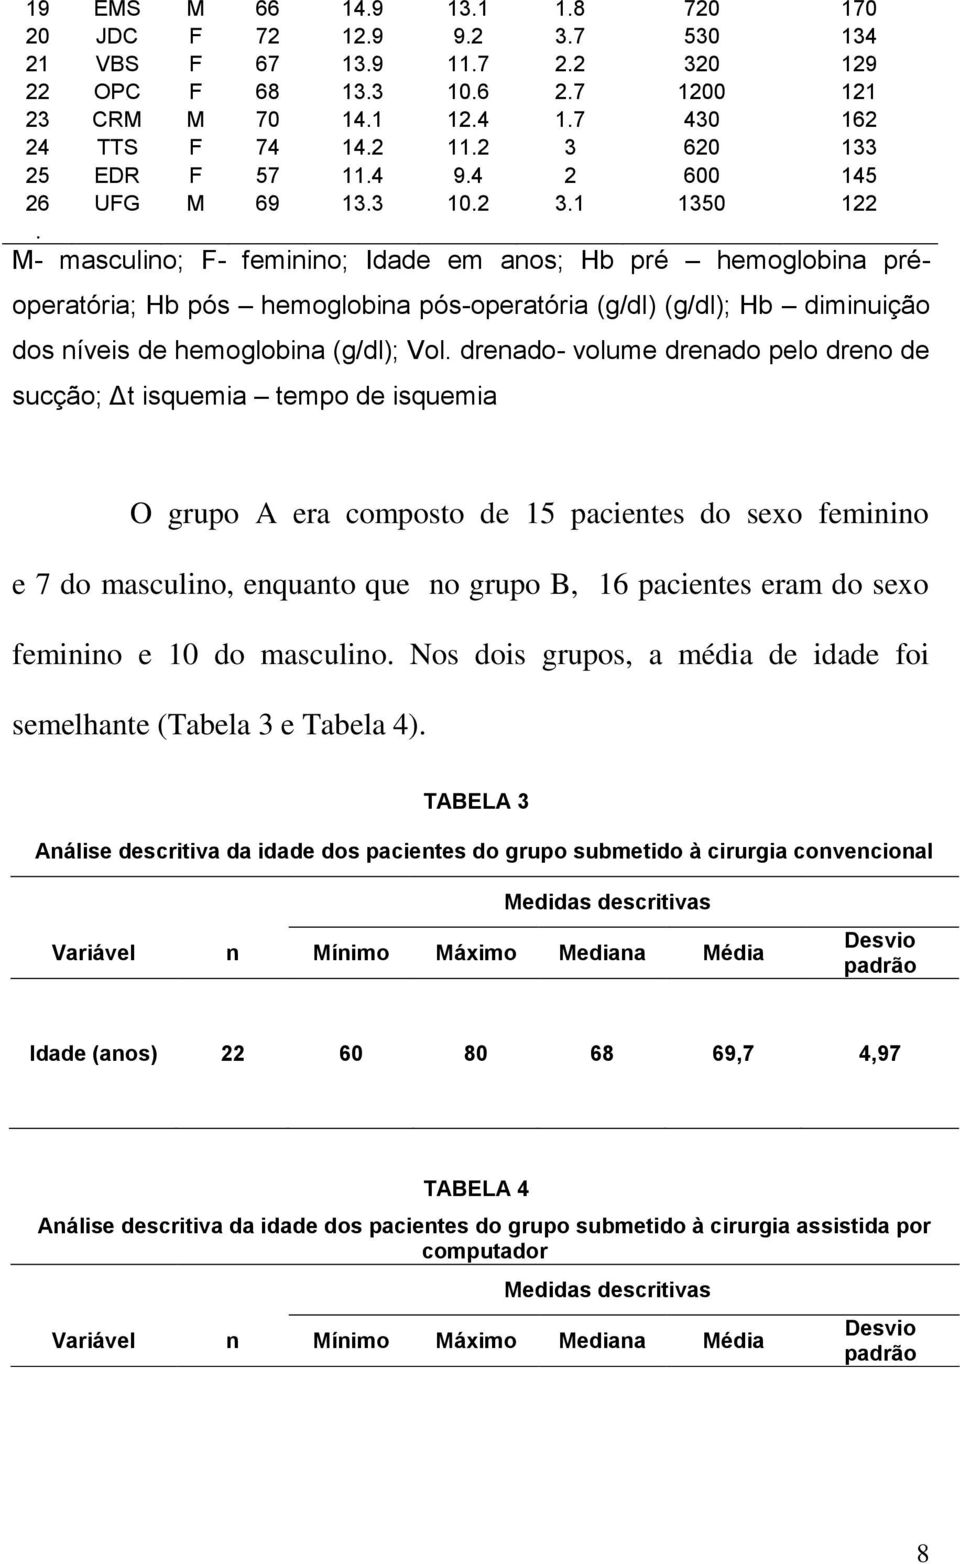 M- masculino; F- feminino; Idade em anos; Hb pré hemoglobina préoperatória; Hb pós hemoglobina pós-operatória (g/dl) (g/dl); Hb diminuição dos níveis de hemoglobina (g/dl); Vol.